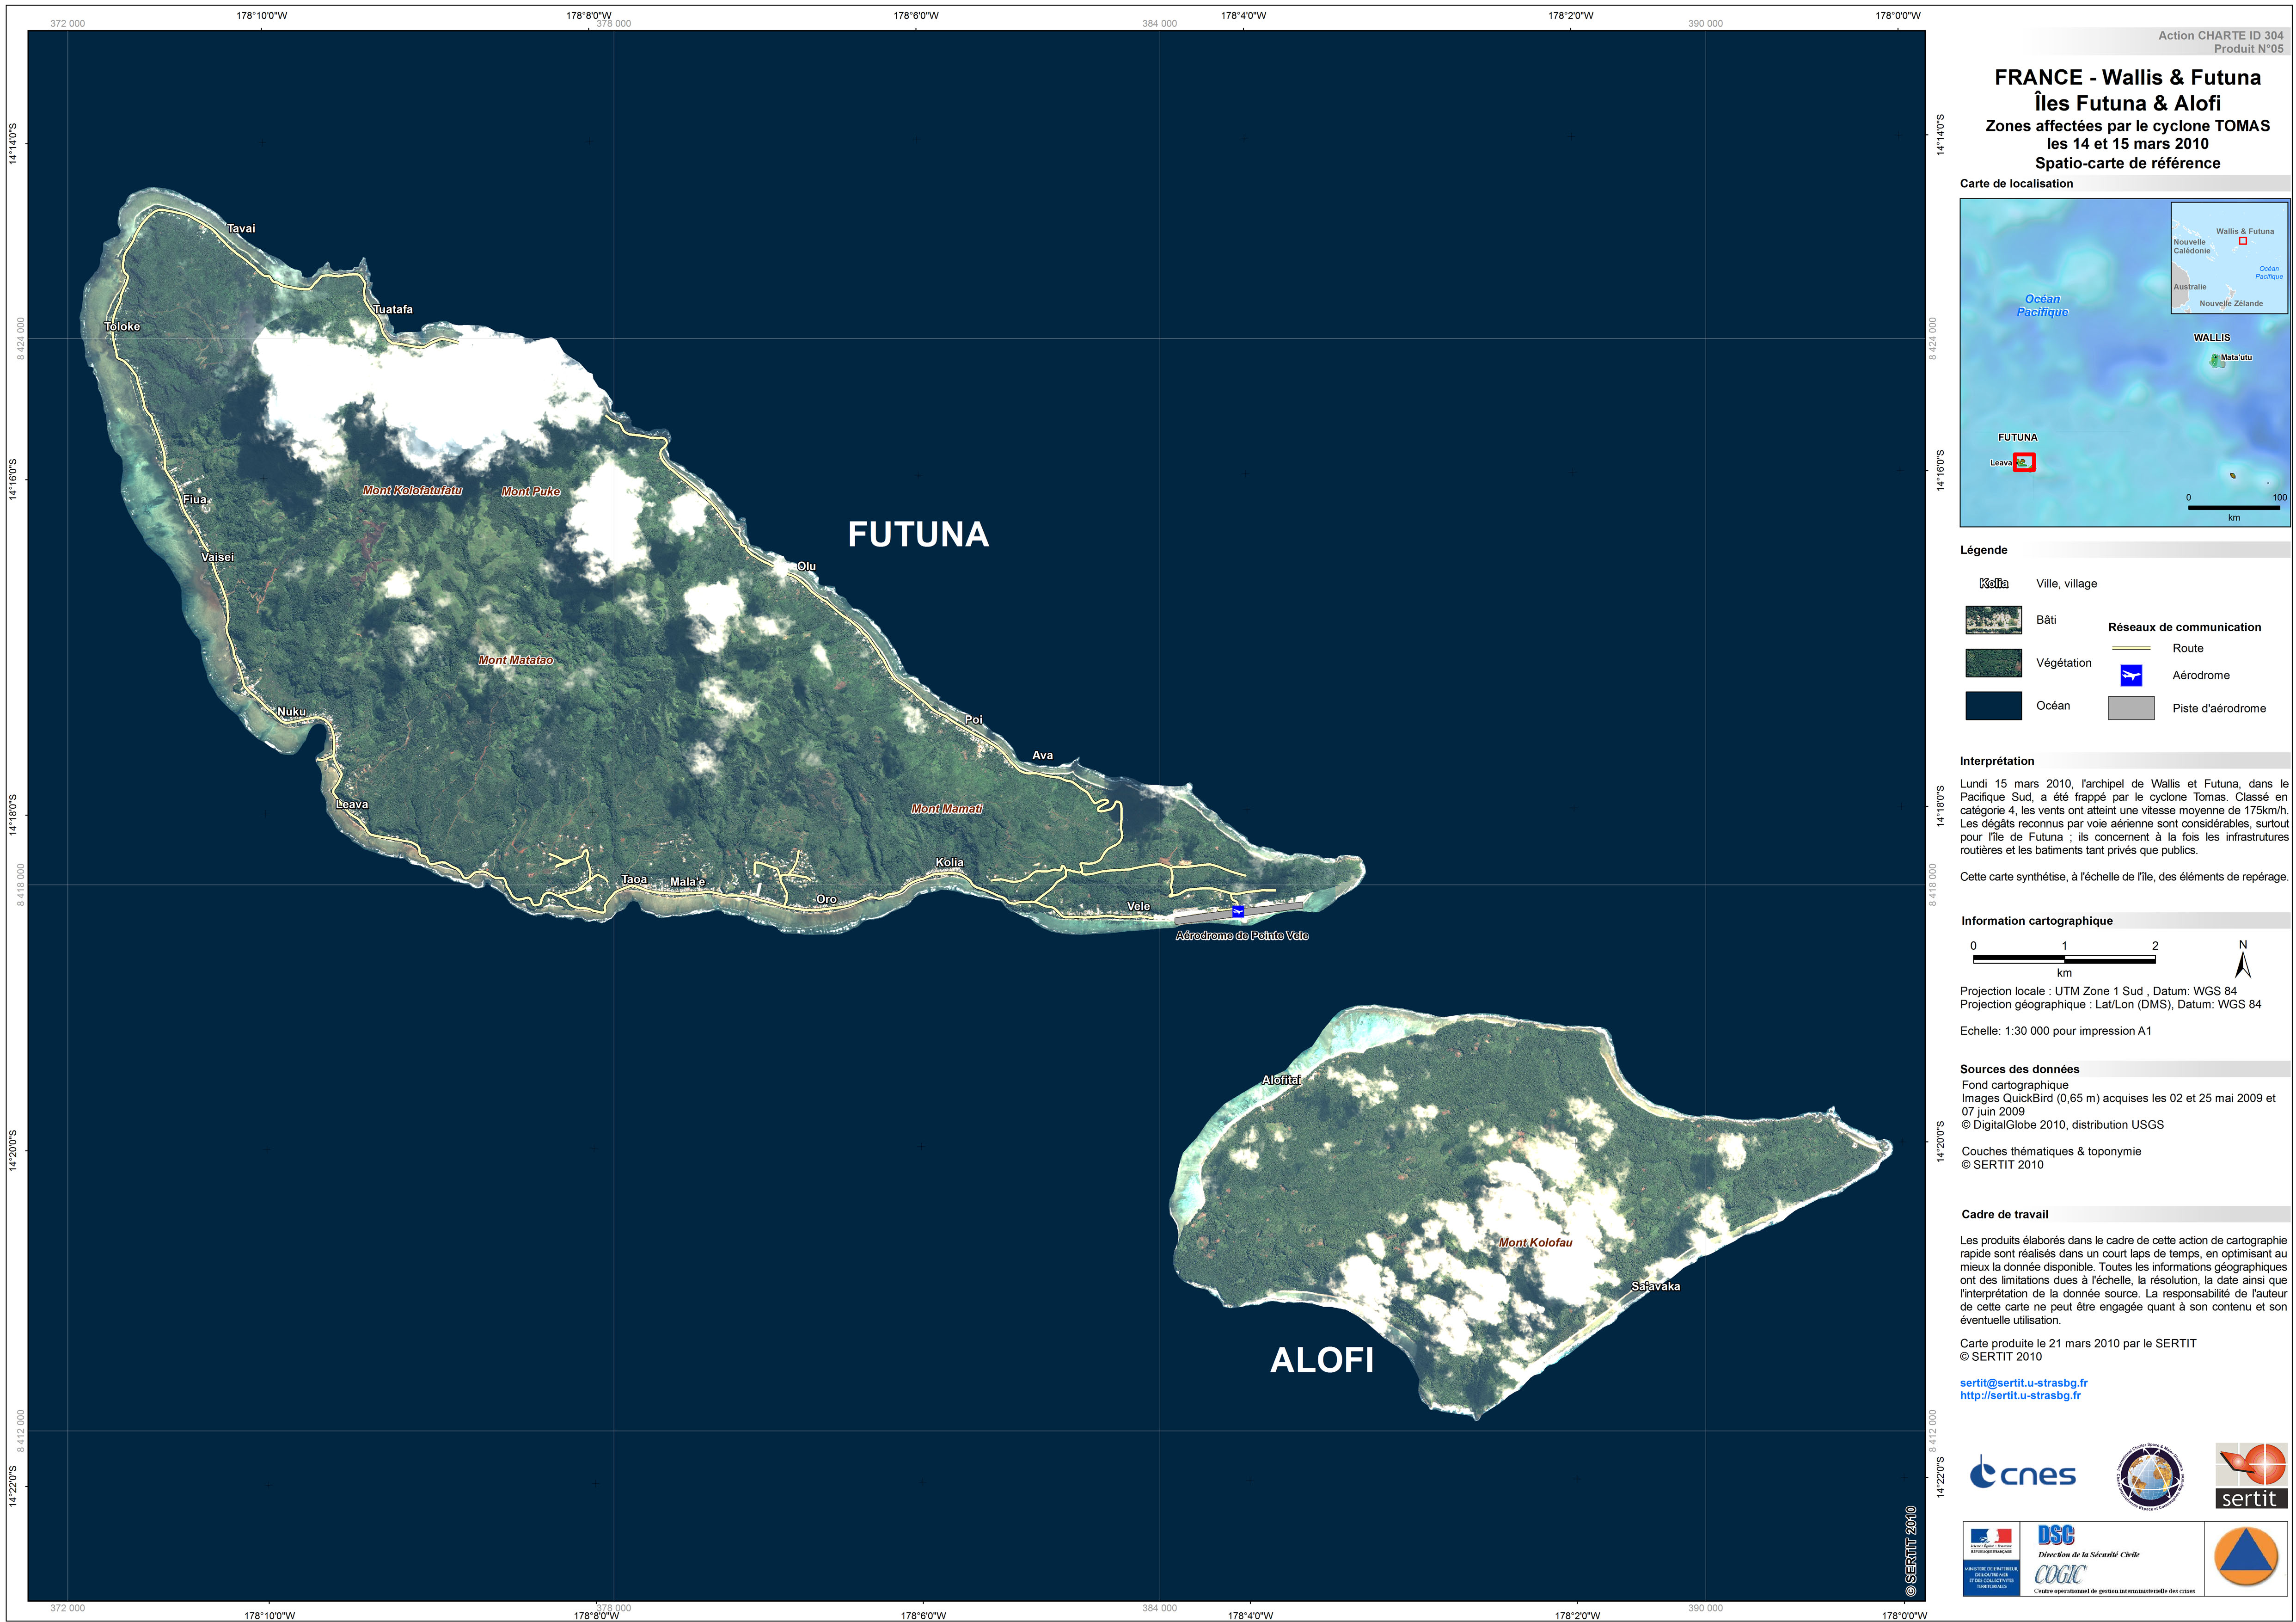 ウォリス フツナ諸島のハリケーン Activations International Disasters Charter